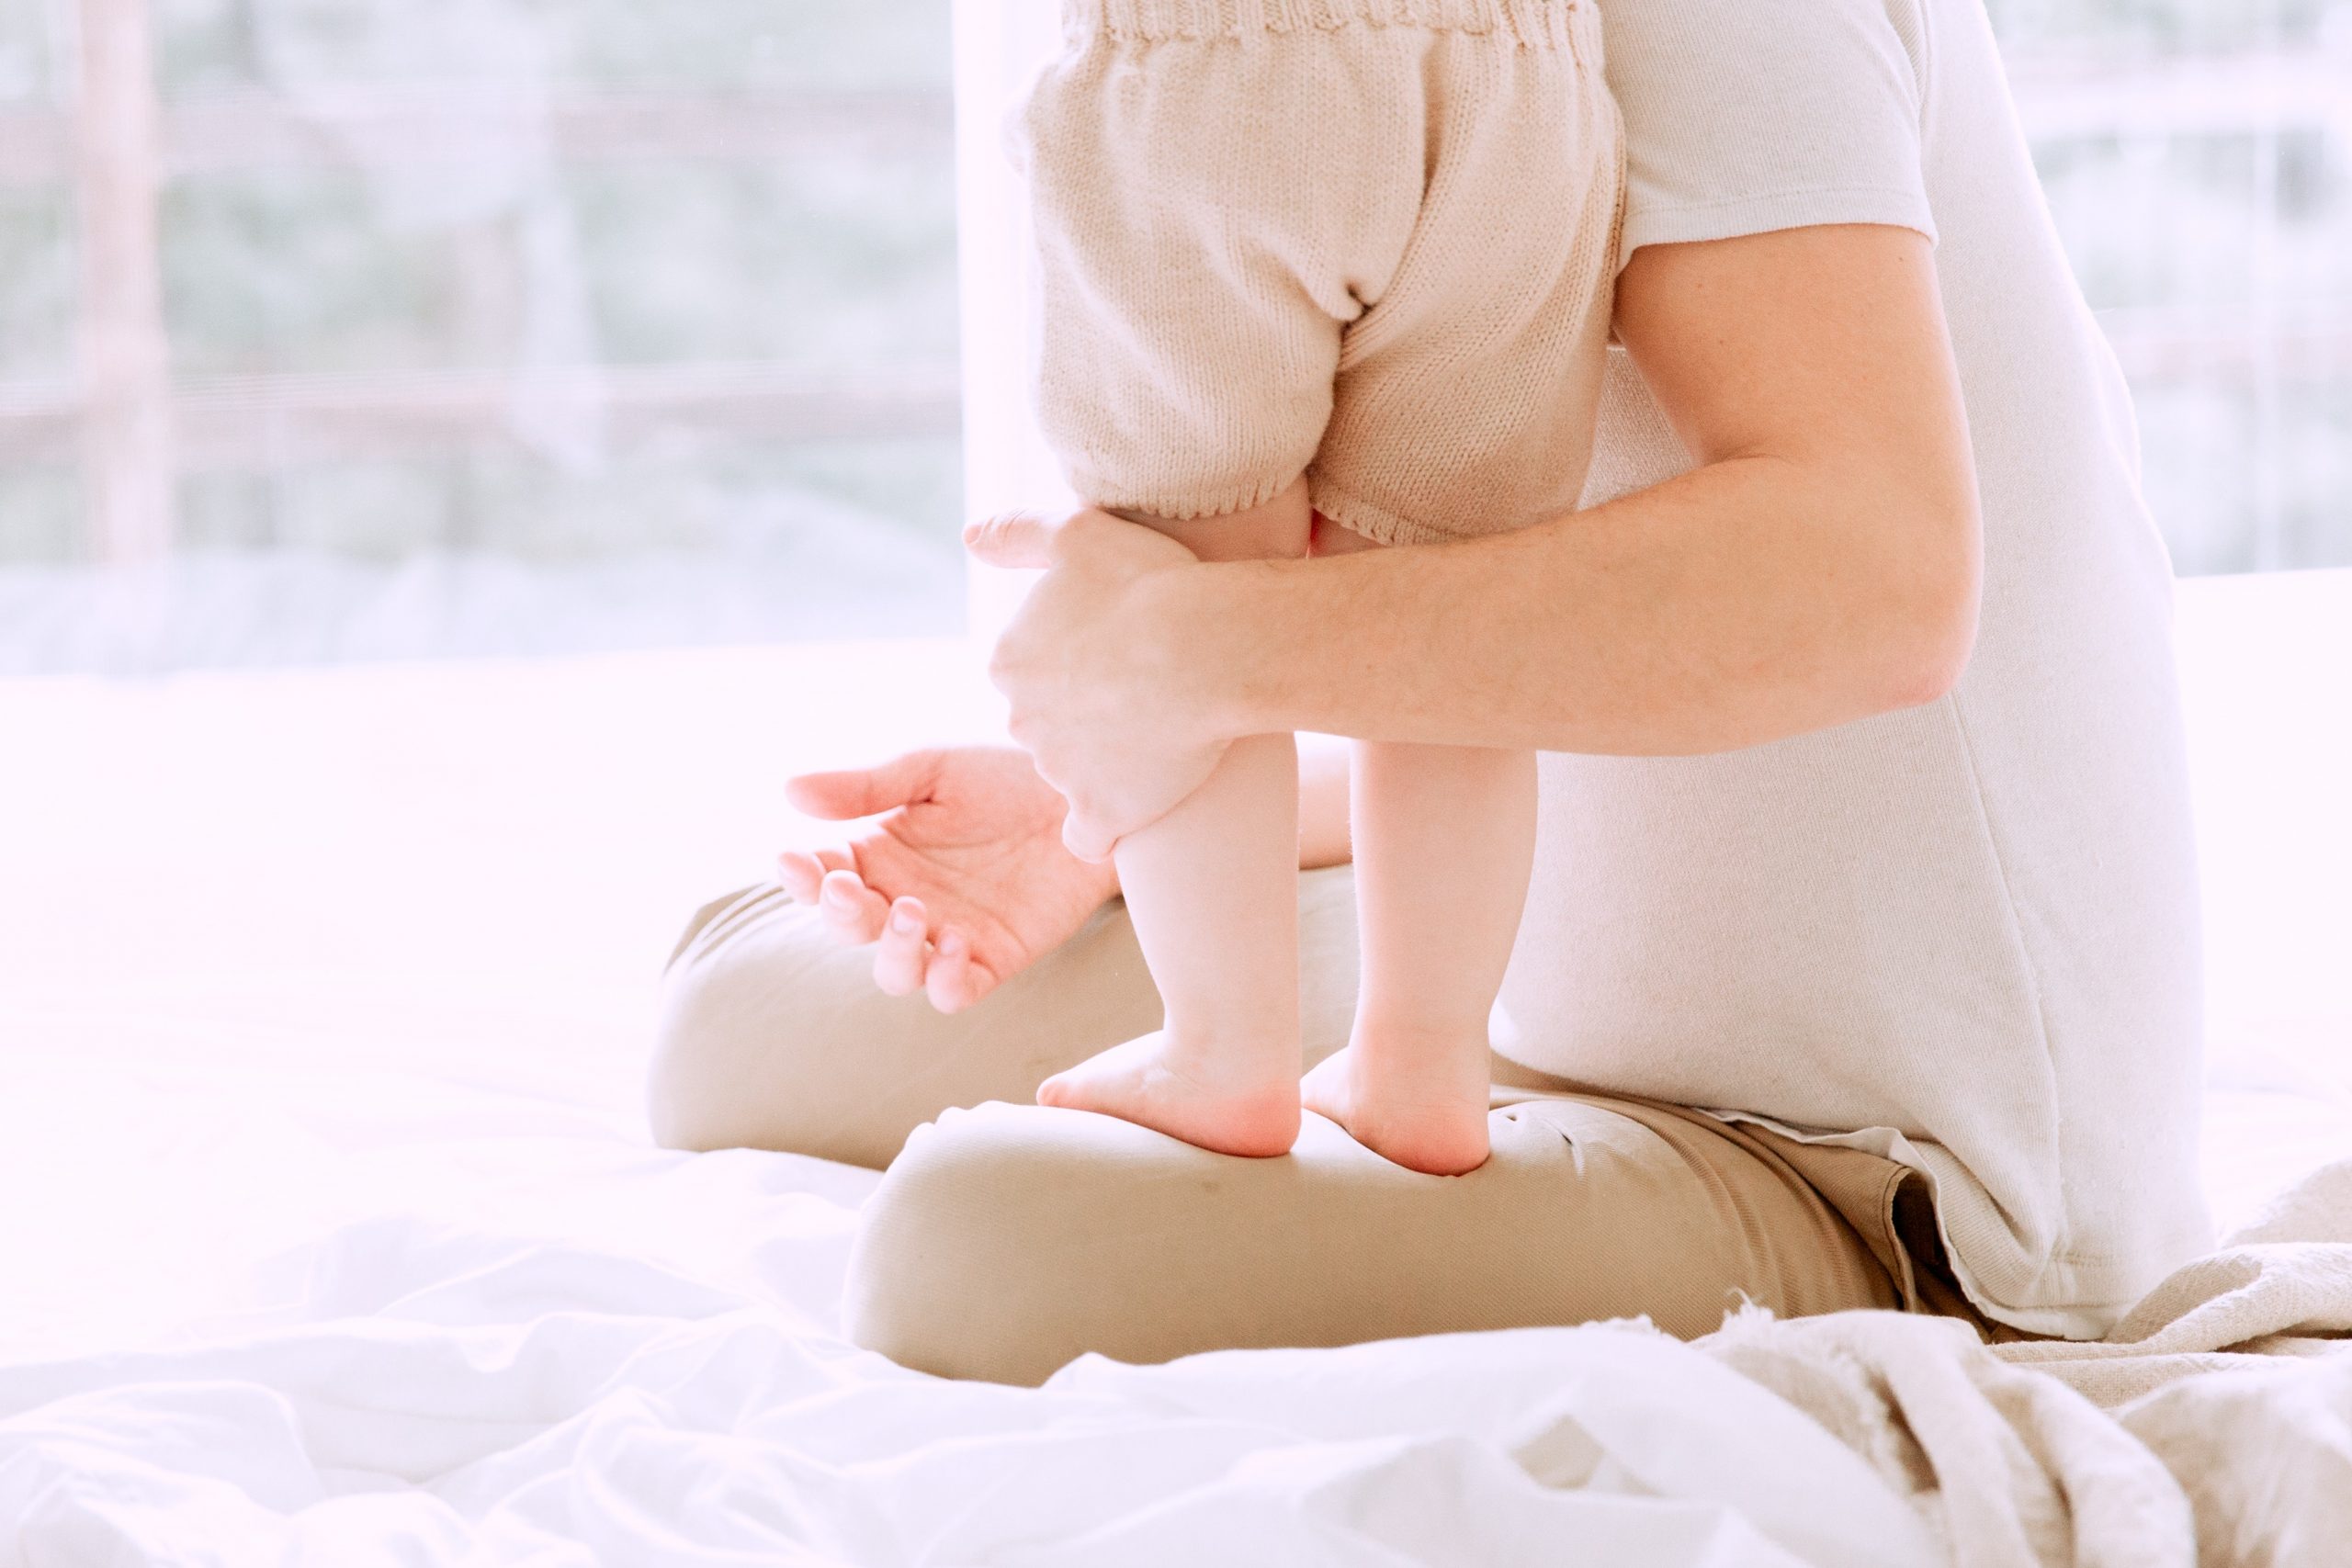 Minimalistische babyuitzet: dit kochten we allemaal niet